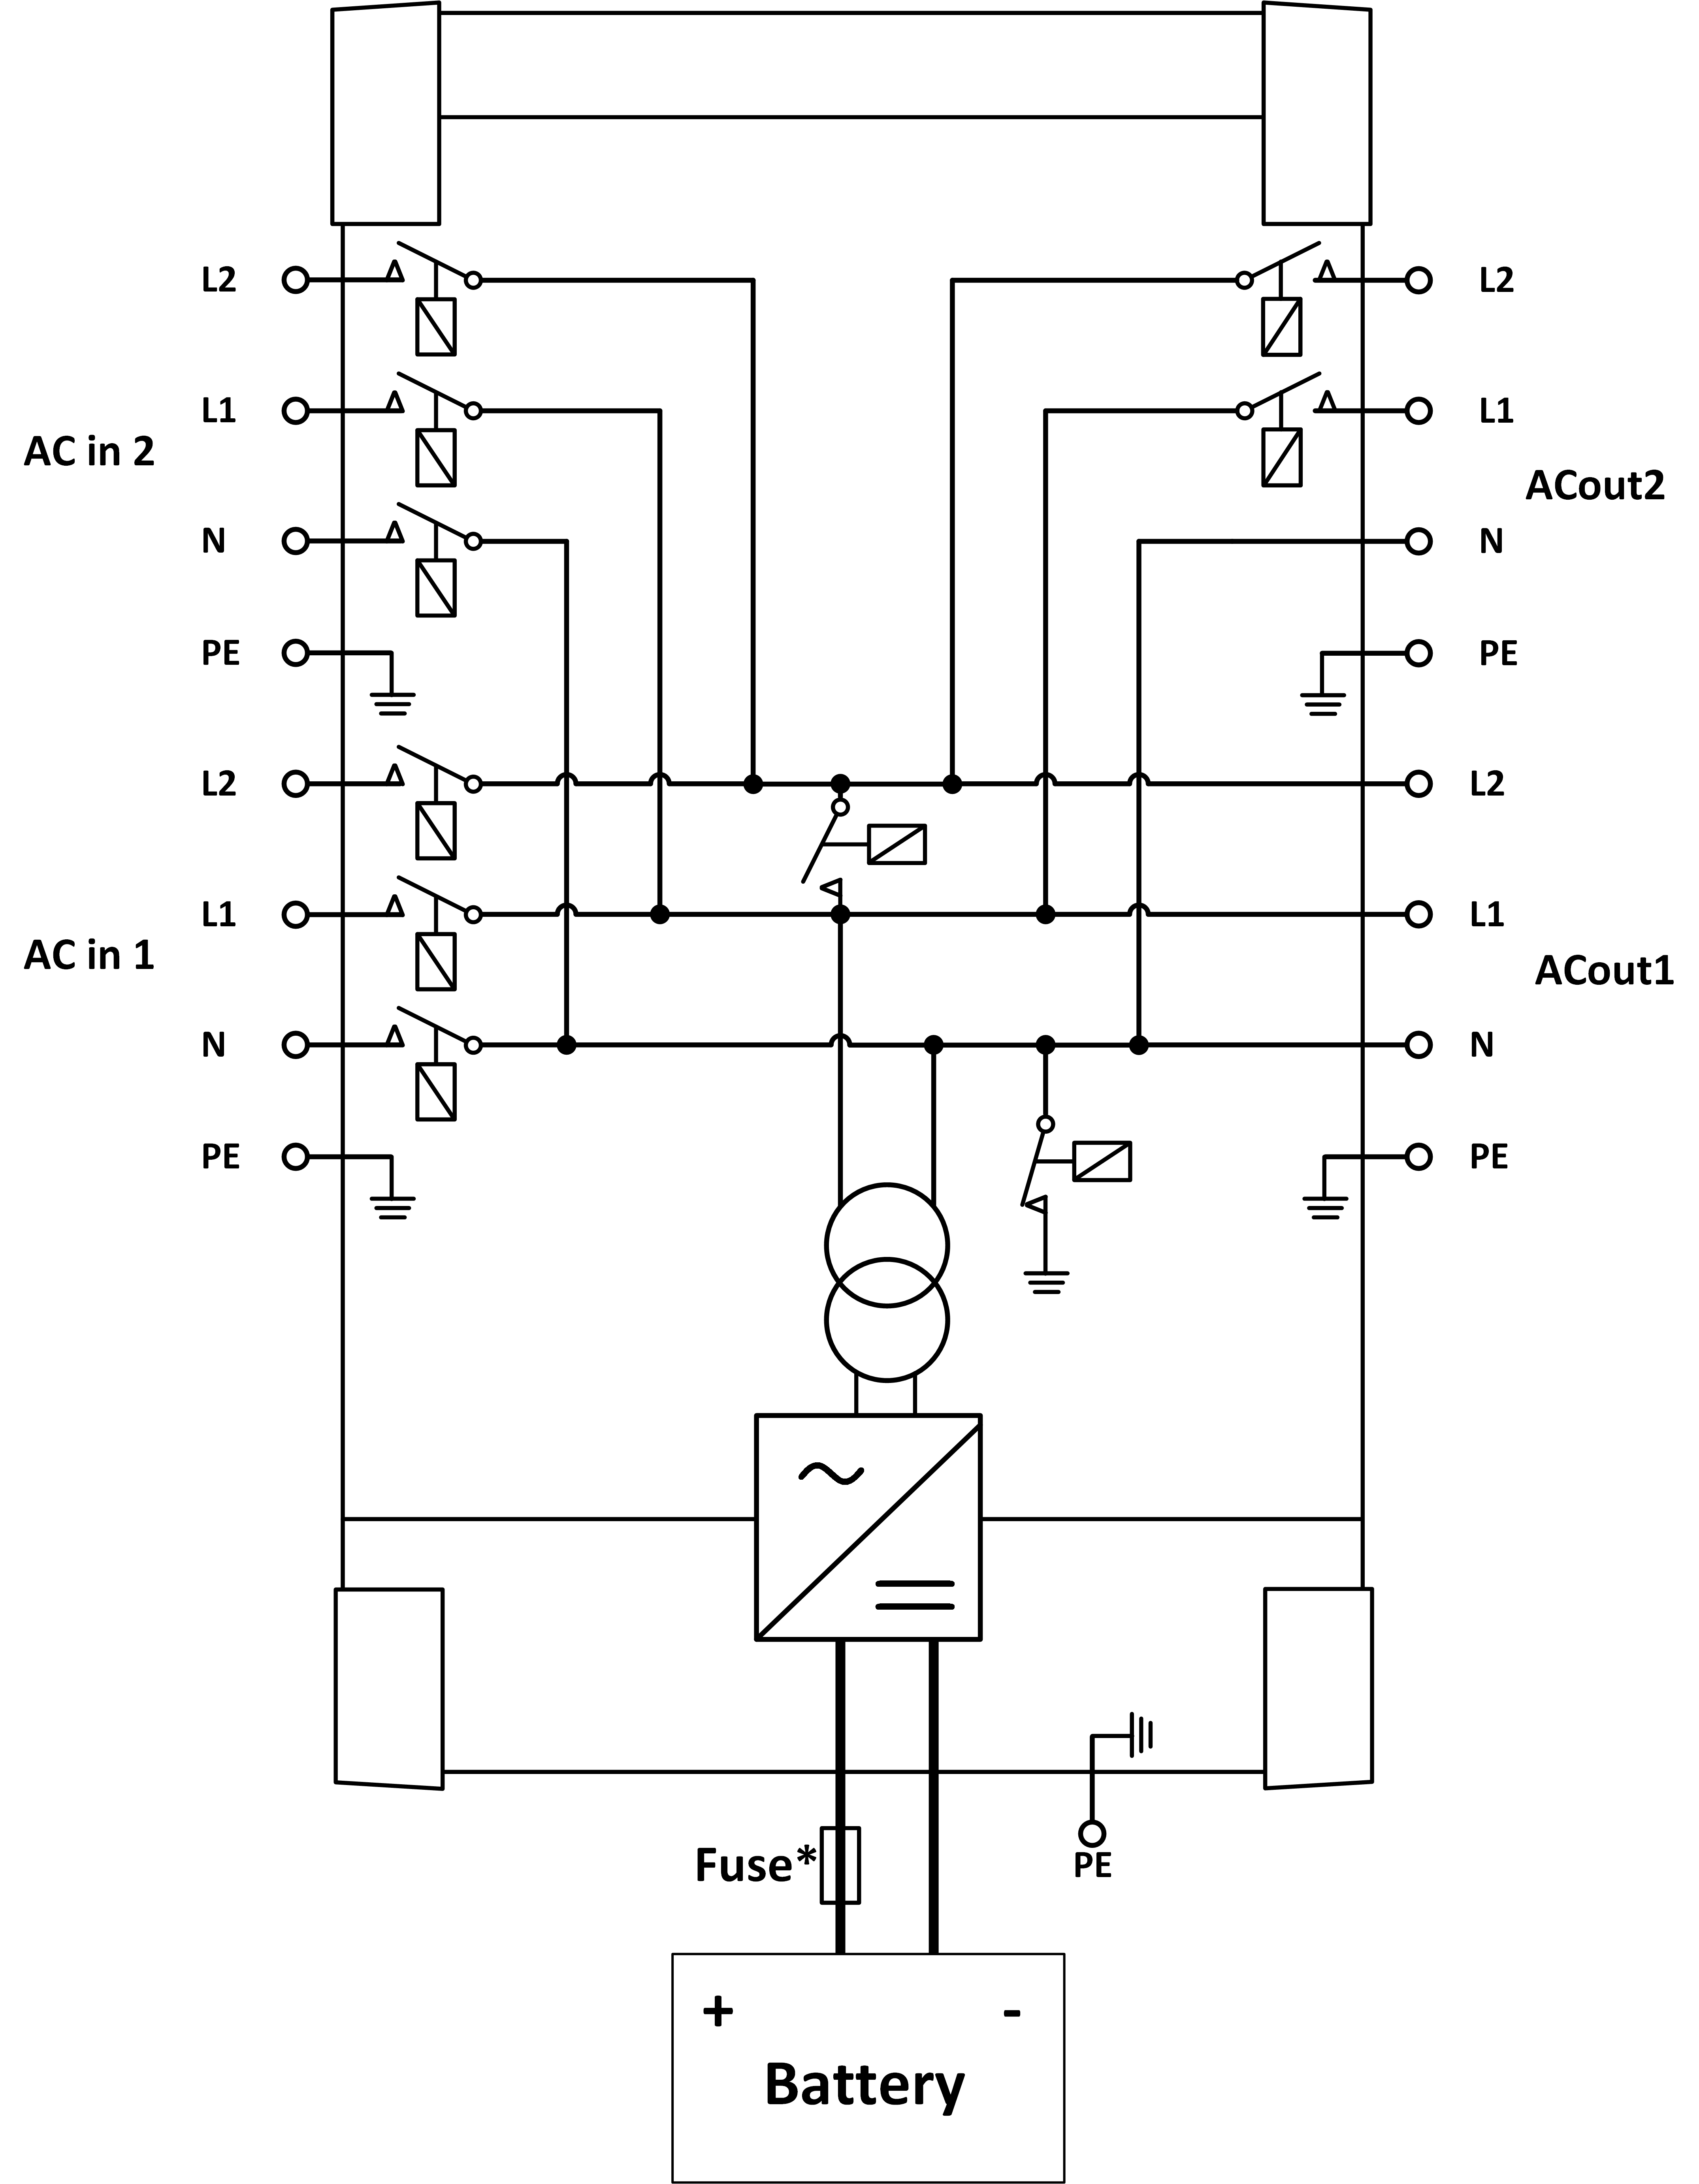 Q-II_2x120V_-_internal_wiring_diagram.png